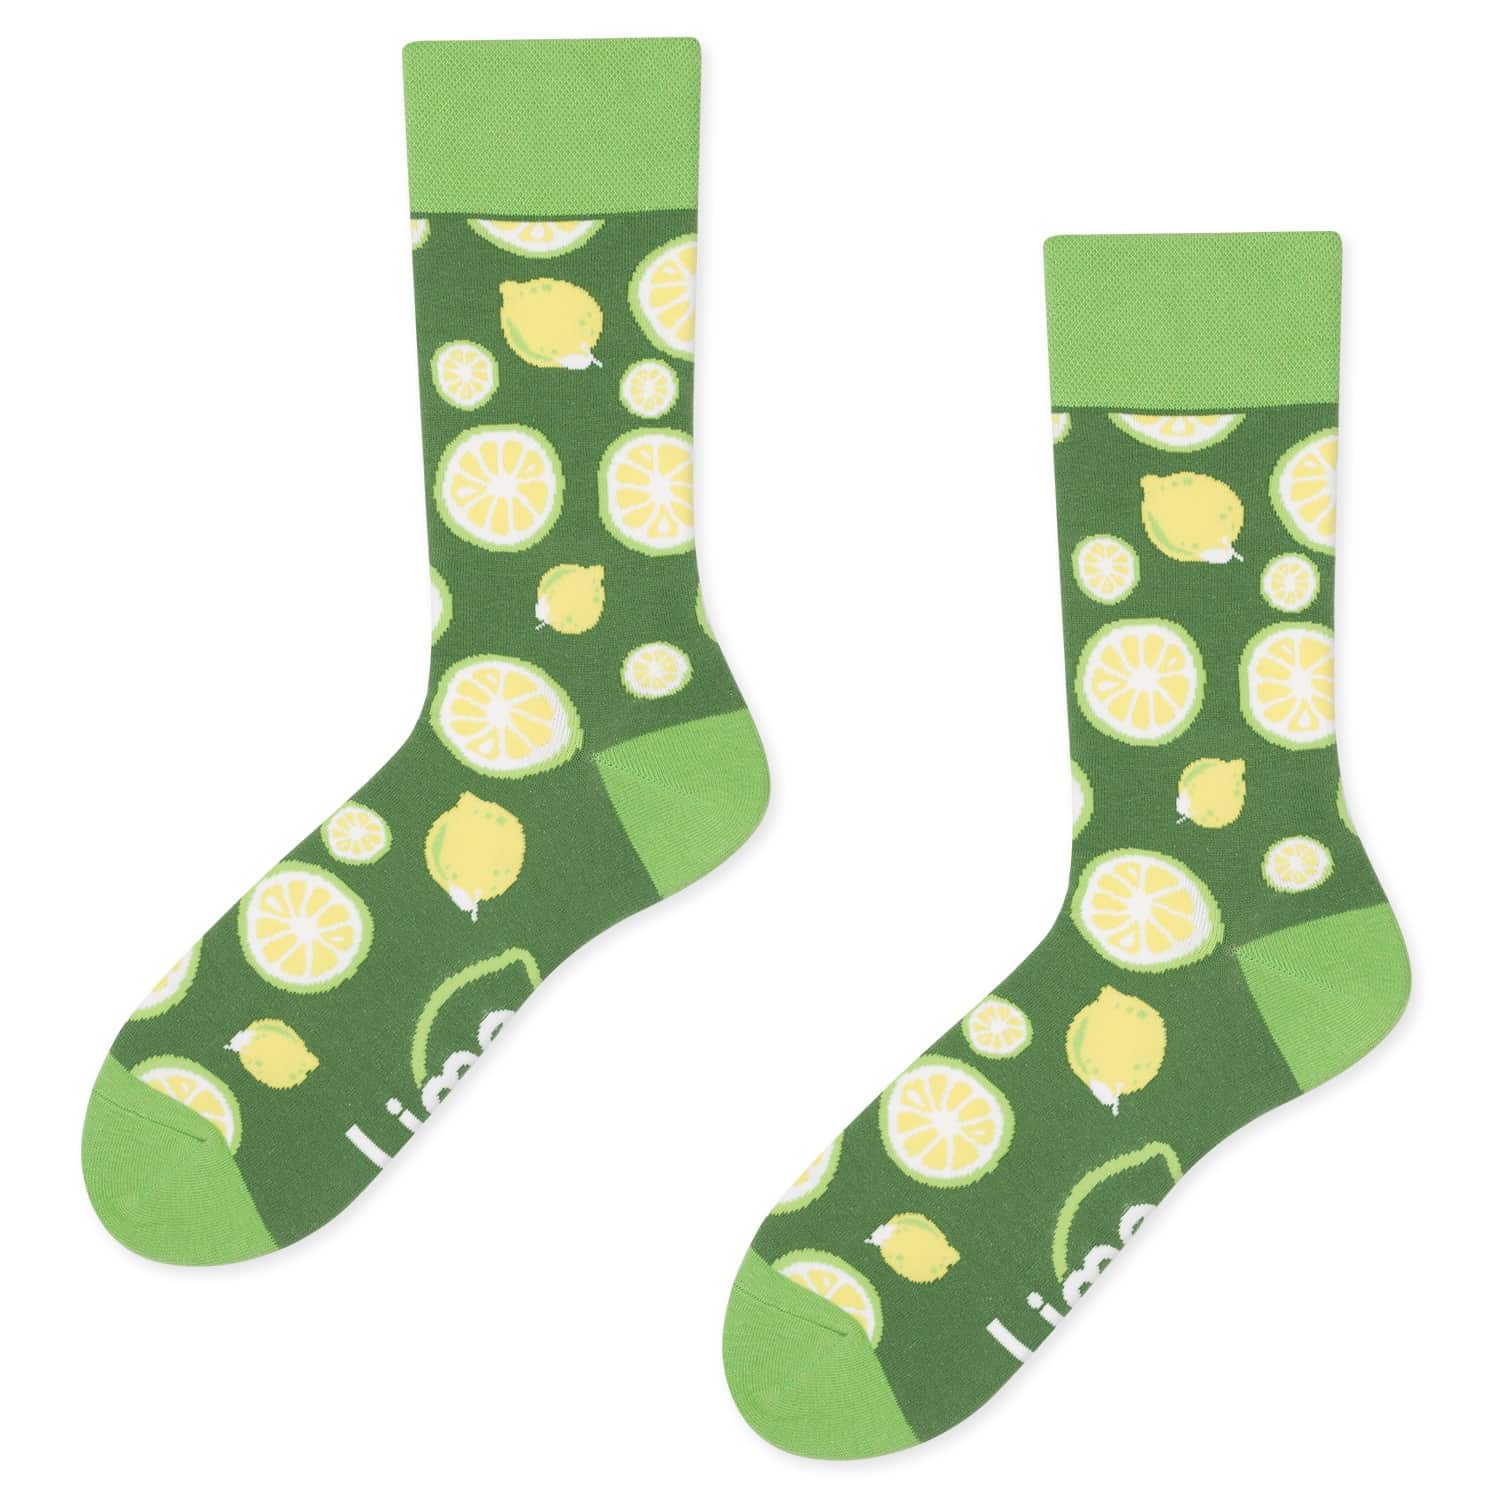 Gepersonaliseerde sokken - Lime Networks sokken